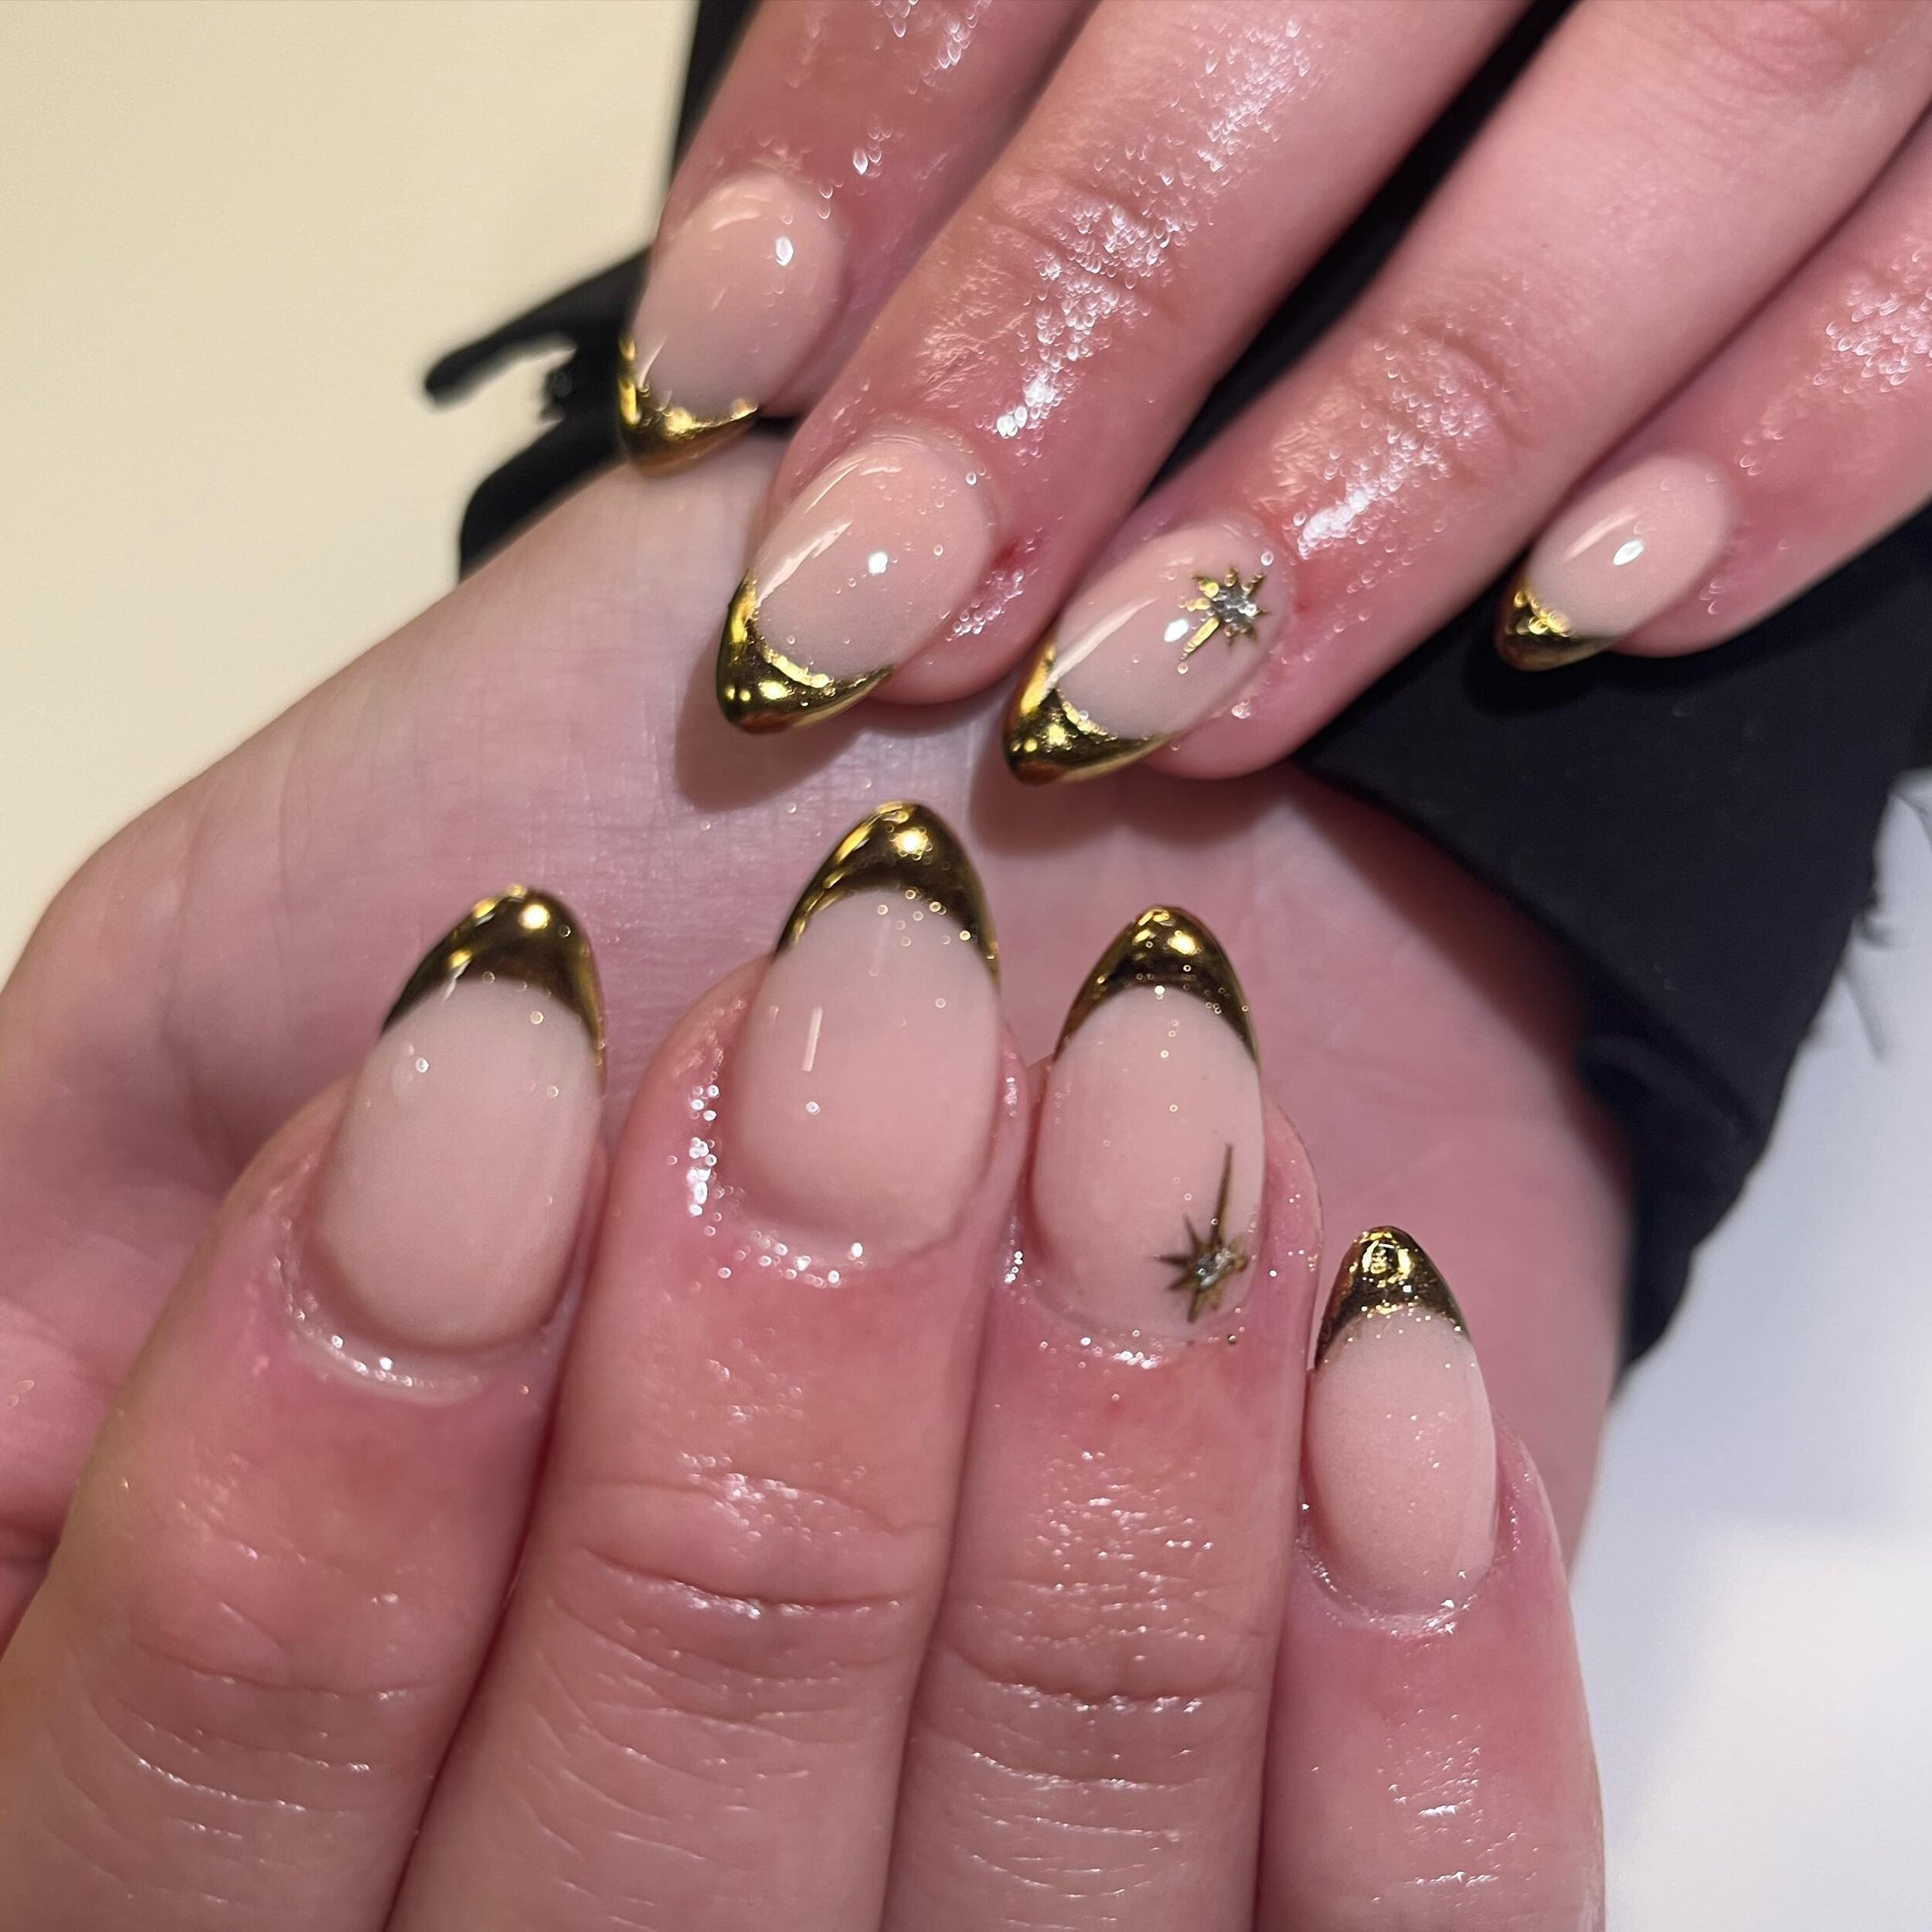 Gold chrome French tips ✨ 

#acrylics #almond #chrome #frenchtips #nails #nailsbyjojo #cardiffsalon #caerau #nailart #semipermanentcosmetics #nailtech